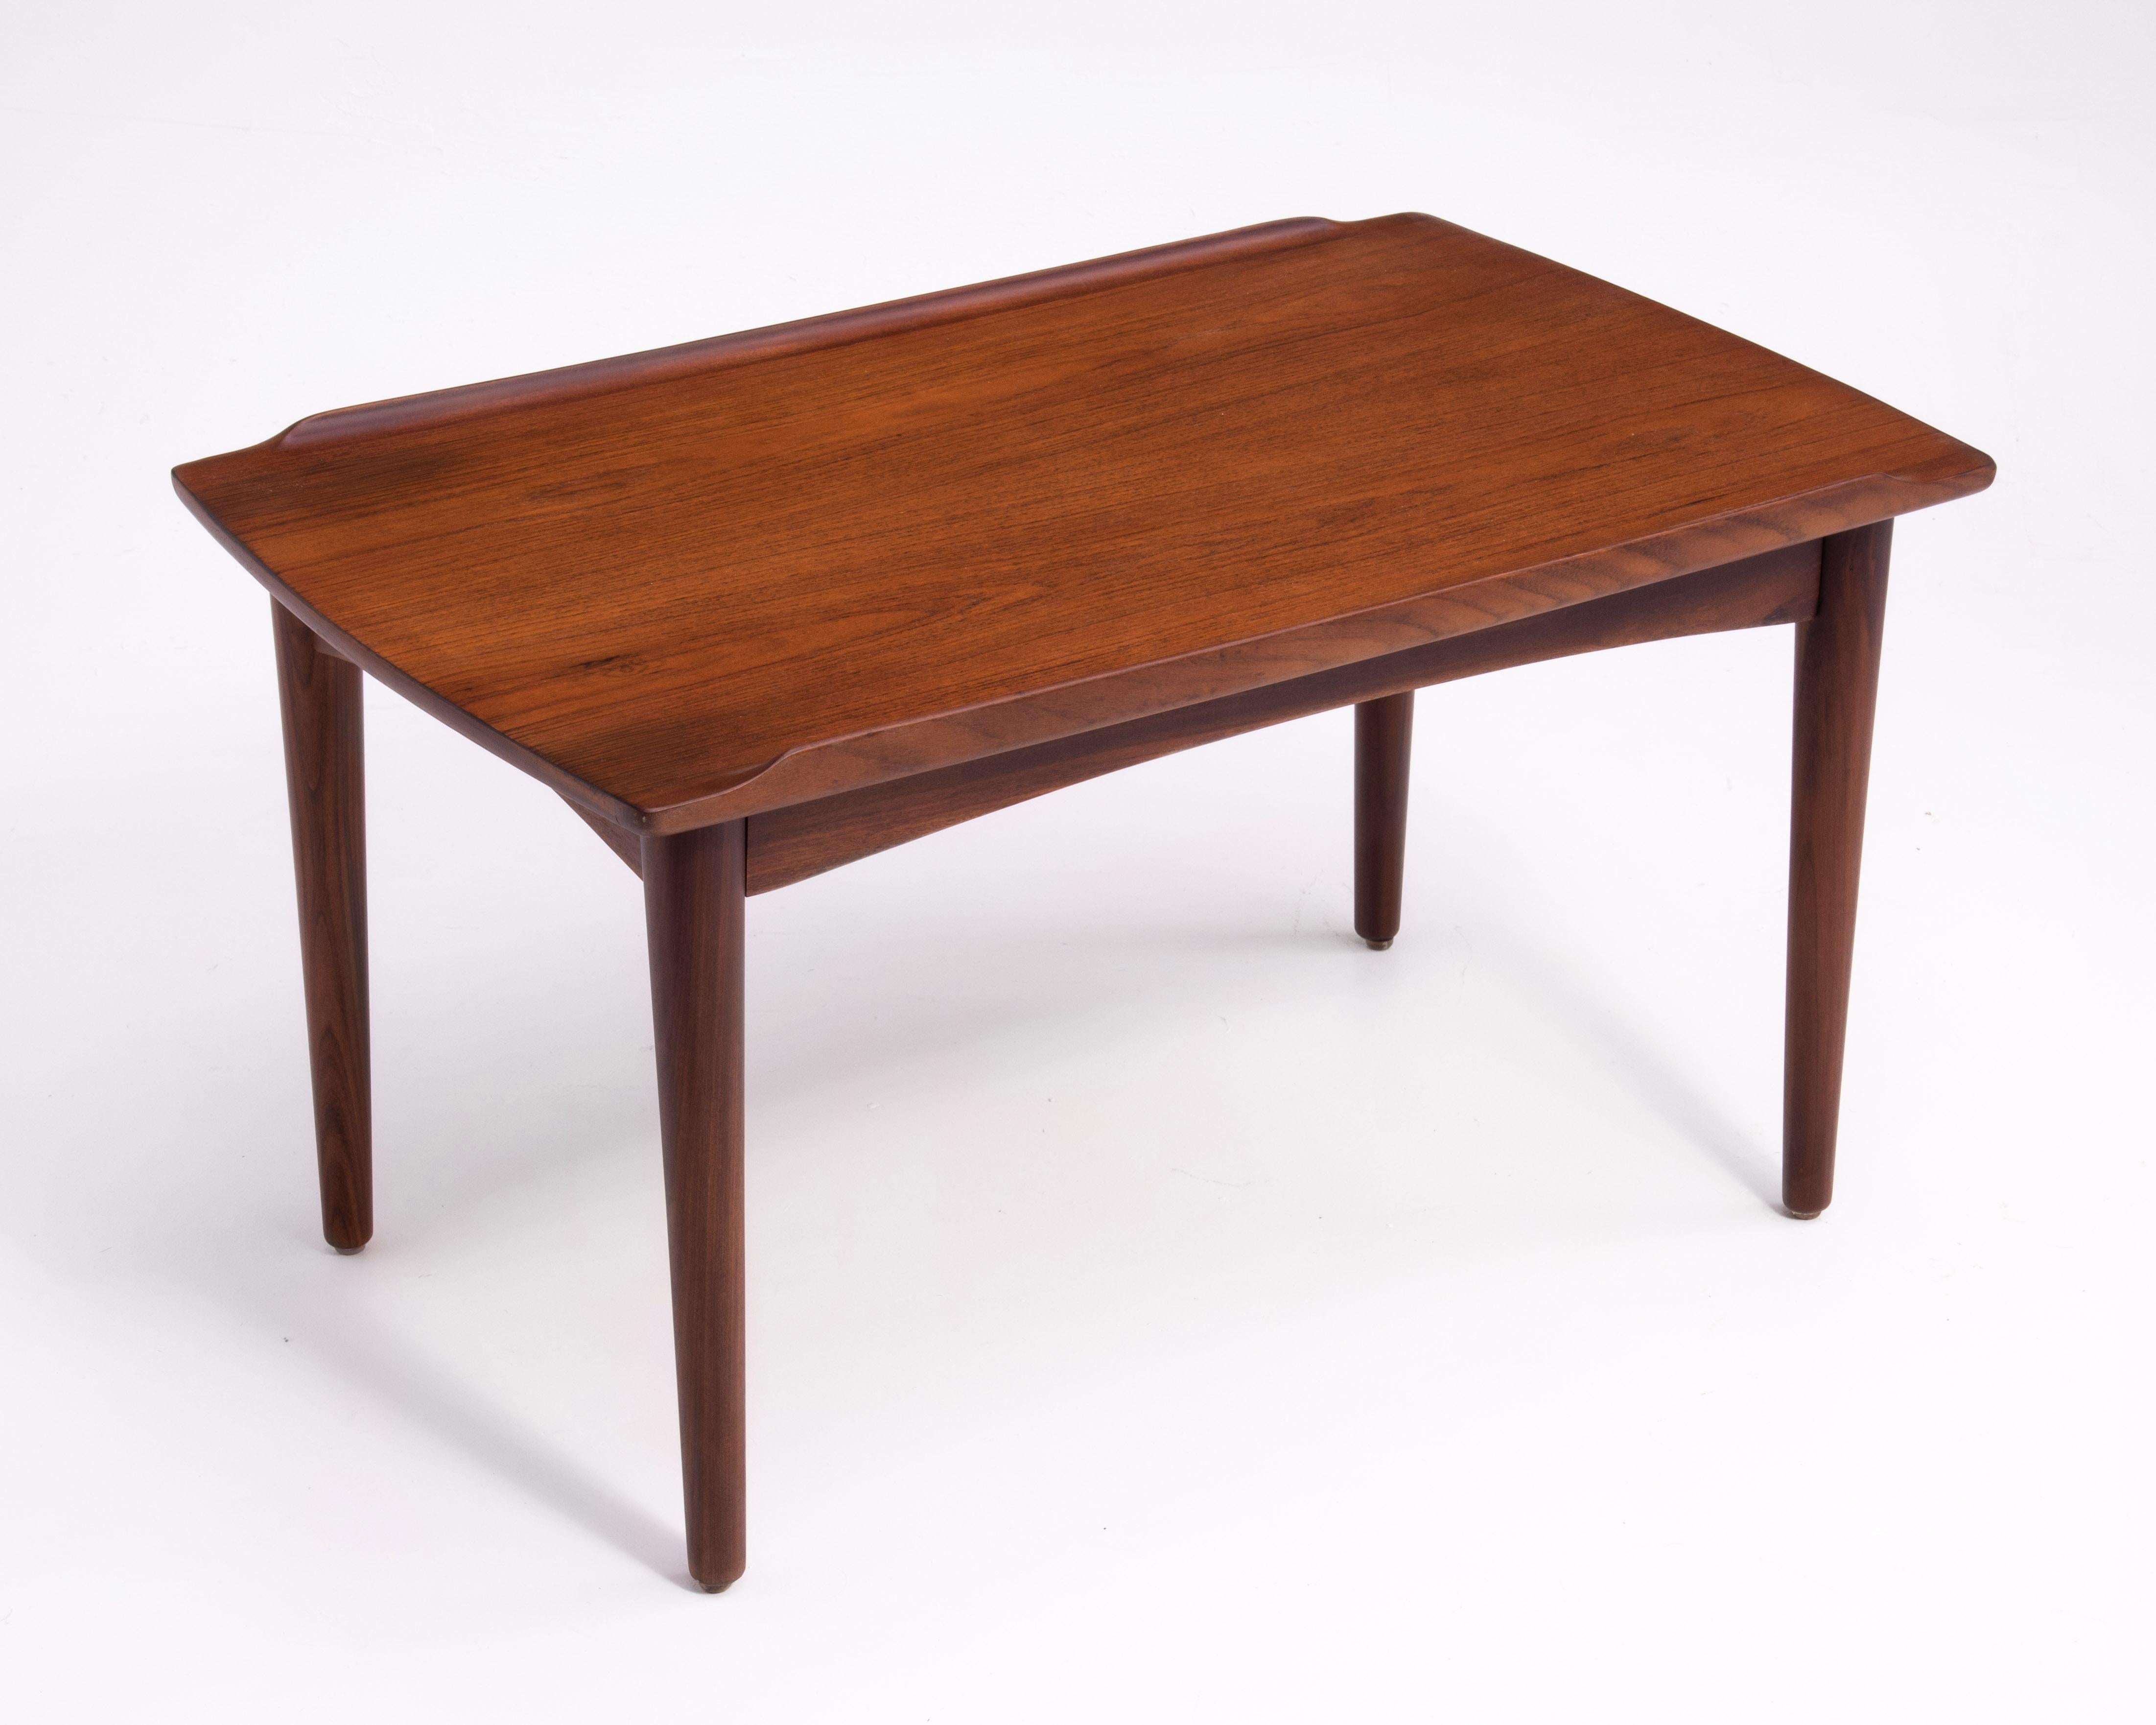 Danish Modern Teak Dowel Leg Side Table After Grete Jalk Marked B. J. 1970s For Sale 5